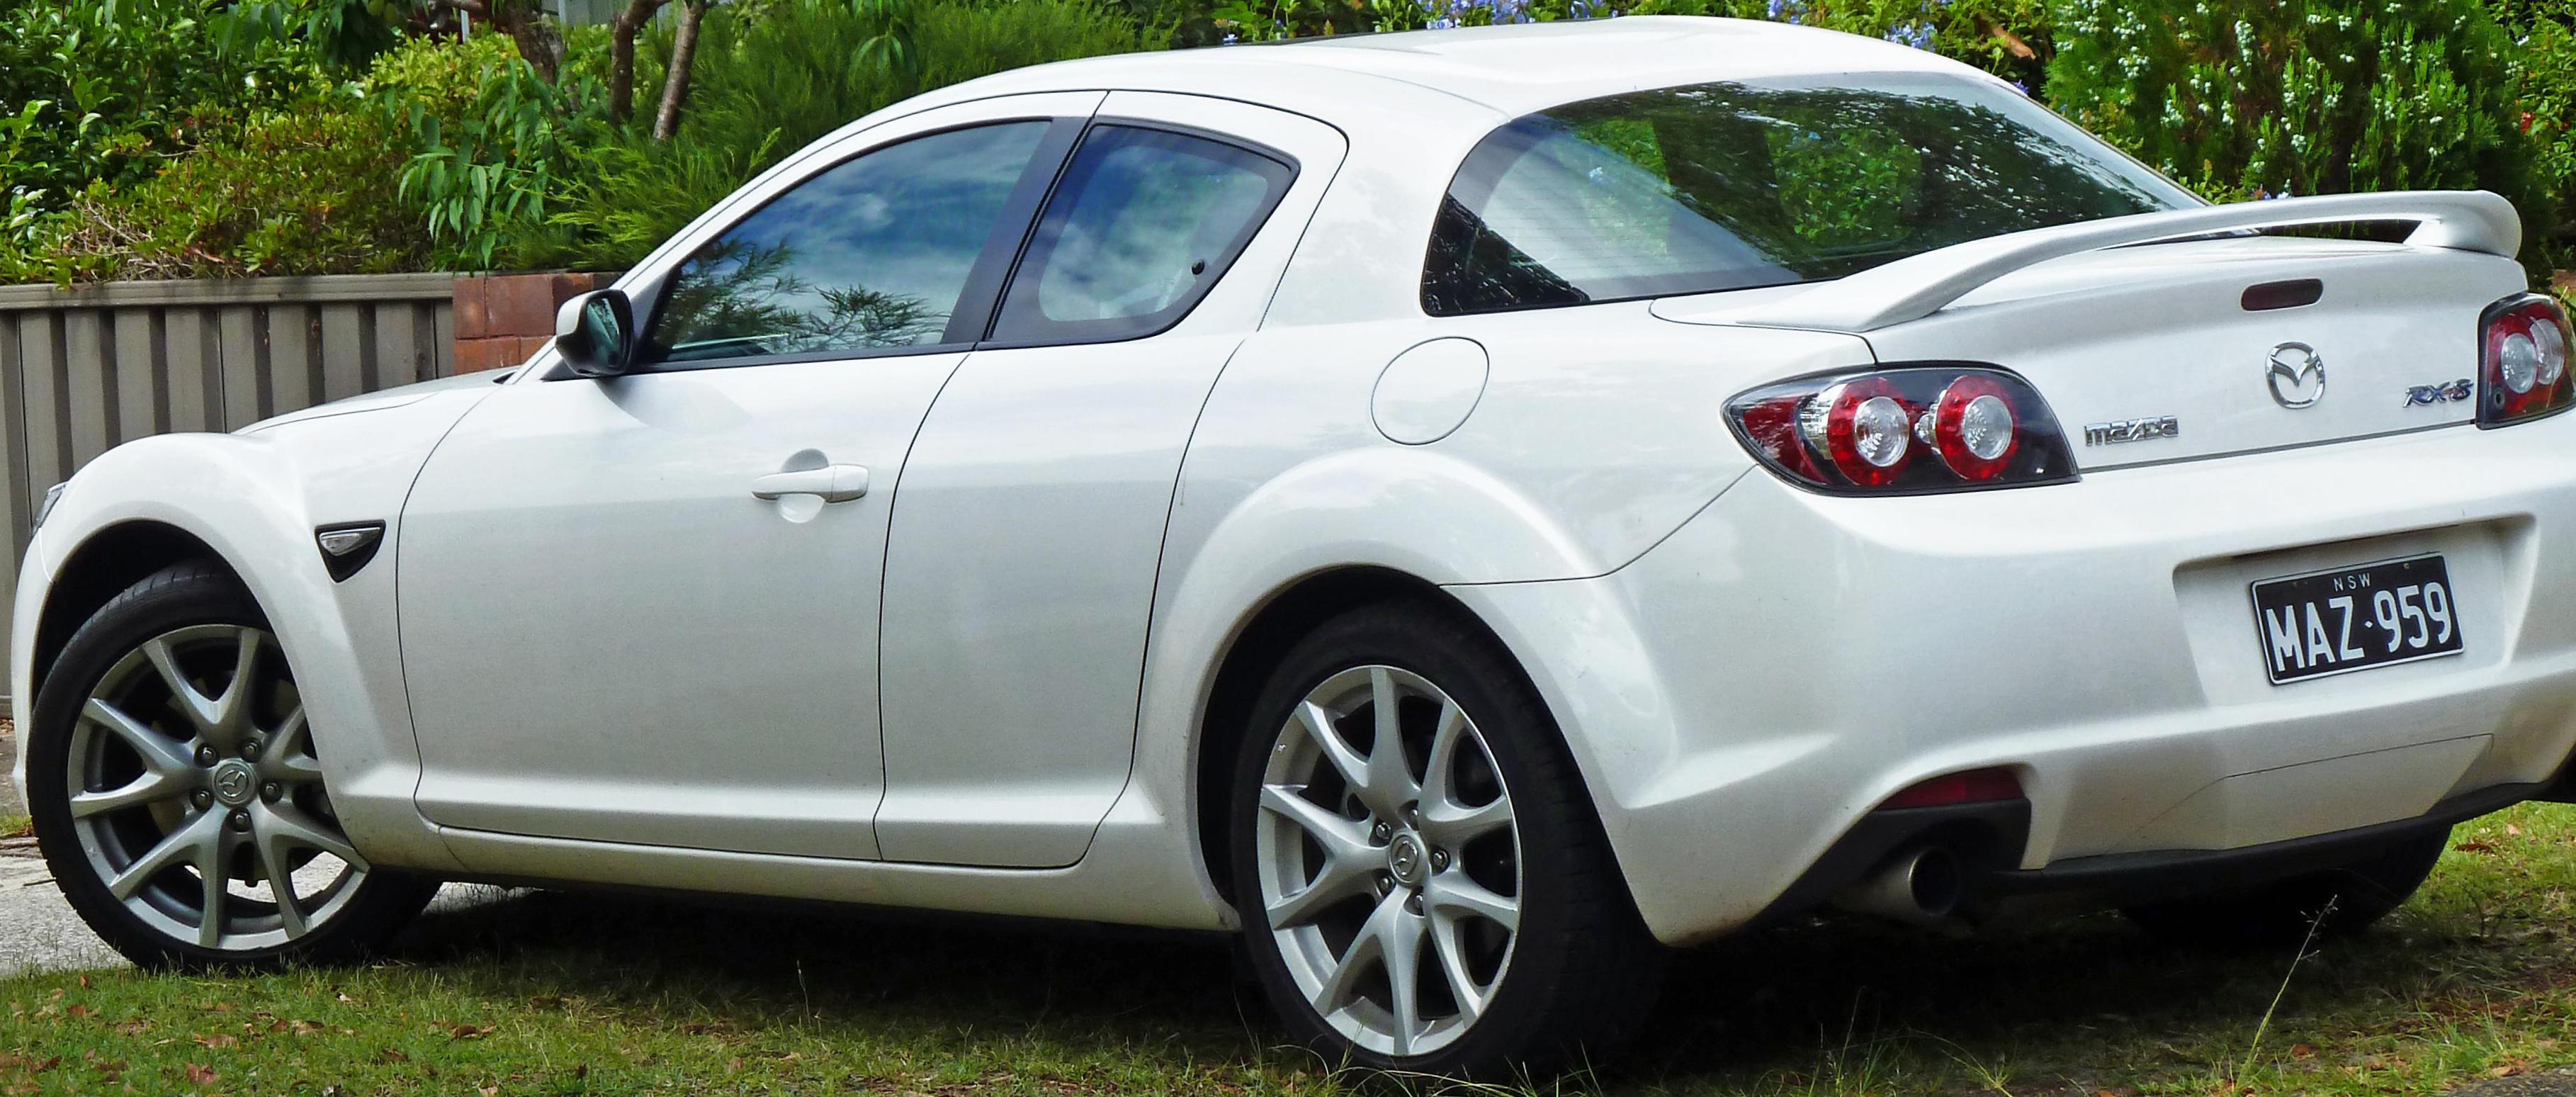 RX-8 Mazda new 2014